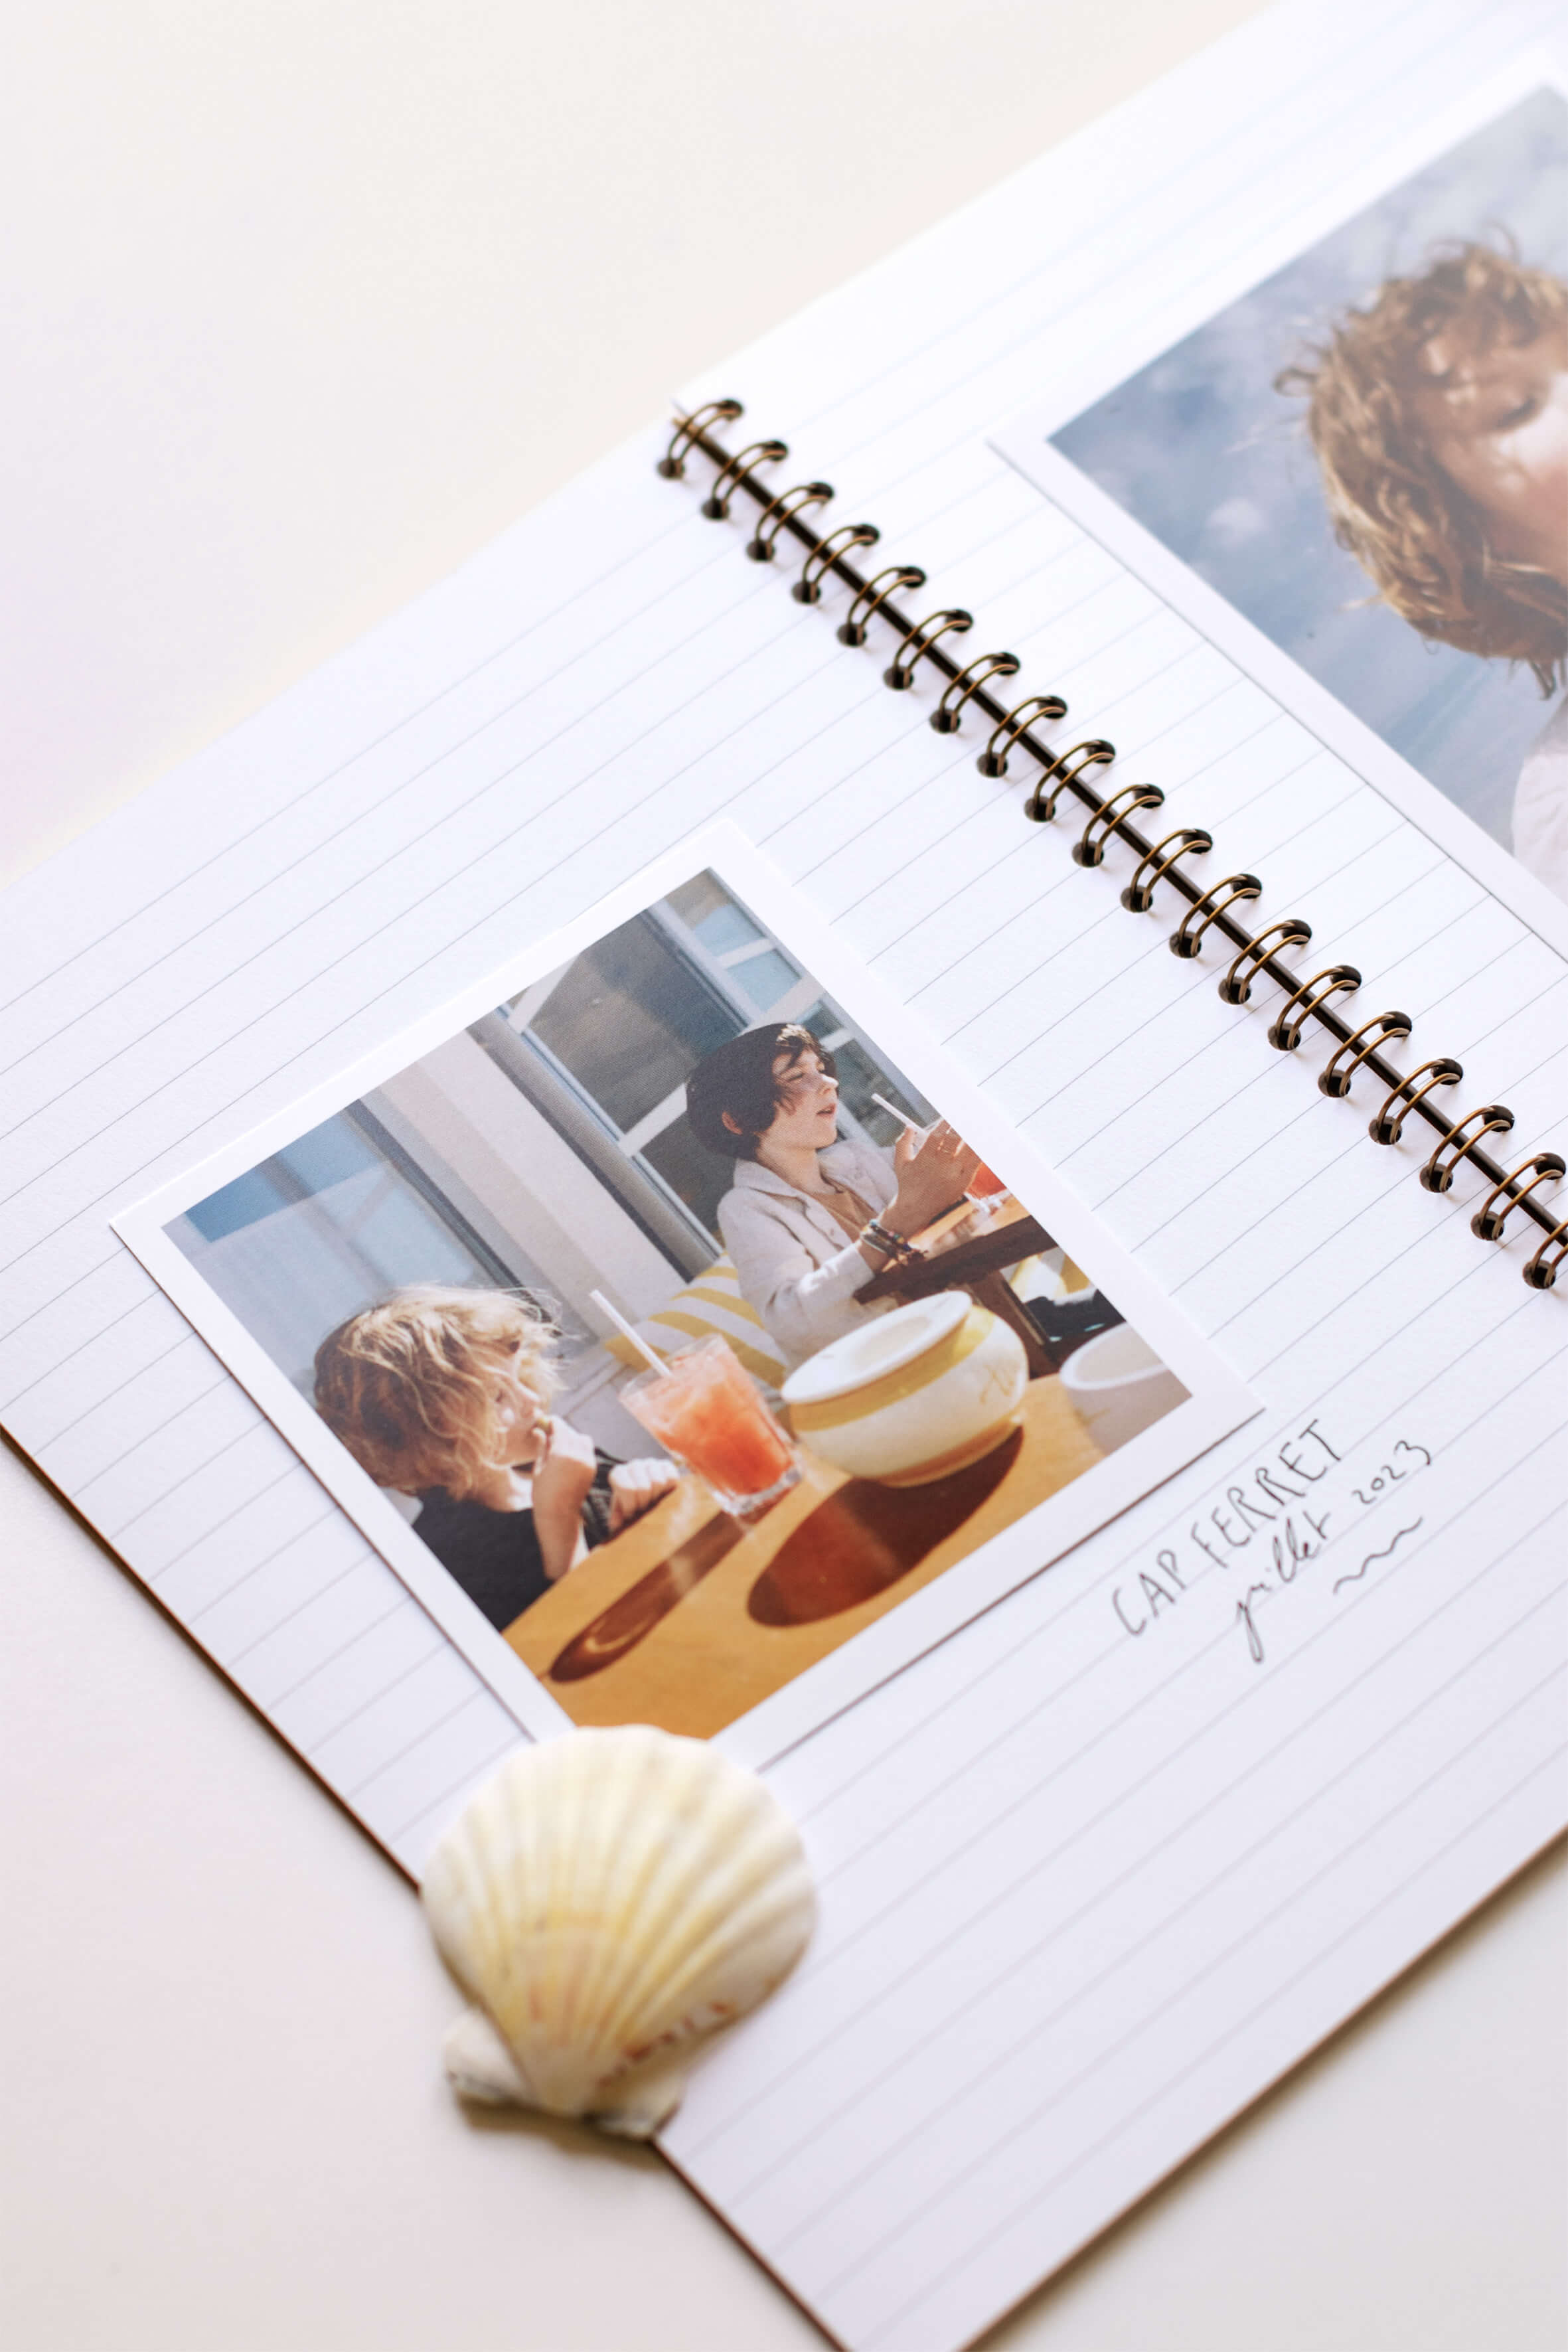 Un tirage photo polaroid collé dans un cahier à spirales avec lignes. Sur la photo, on aperçoit deux enfants à table. La photo est légendée : cap ferret, juillet 2023.